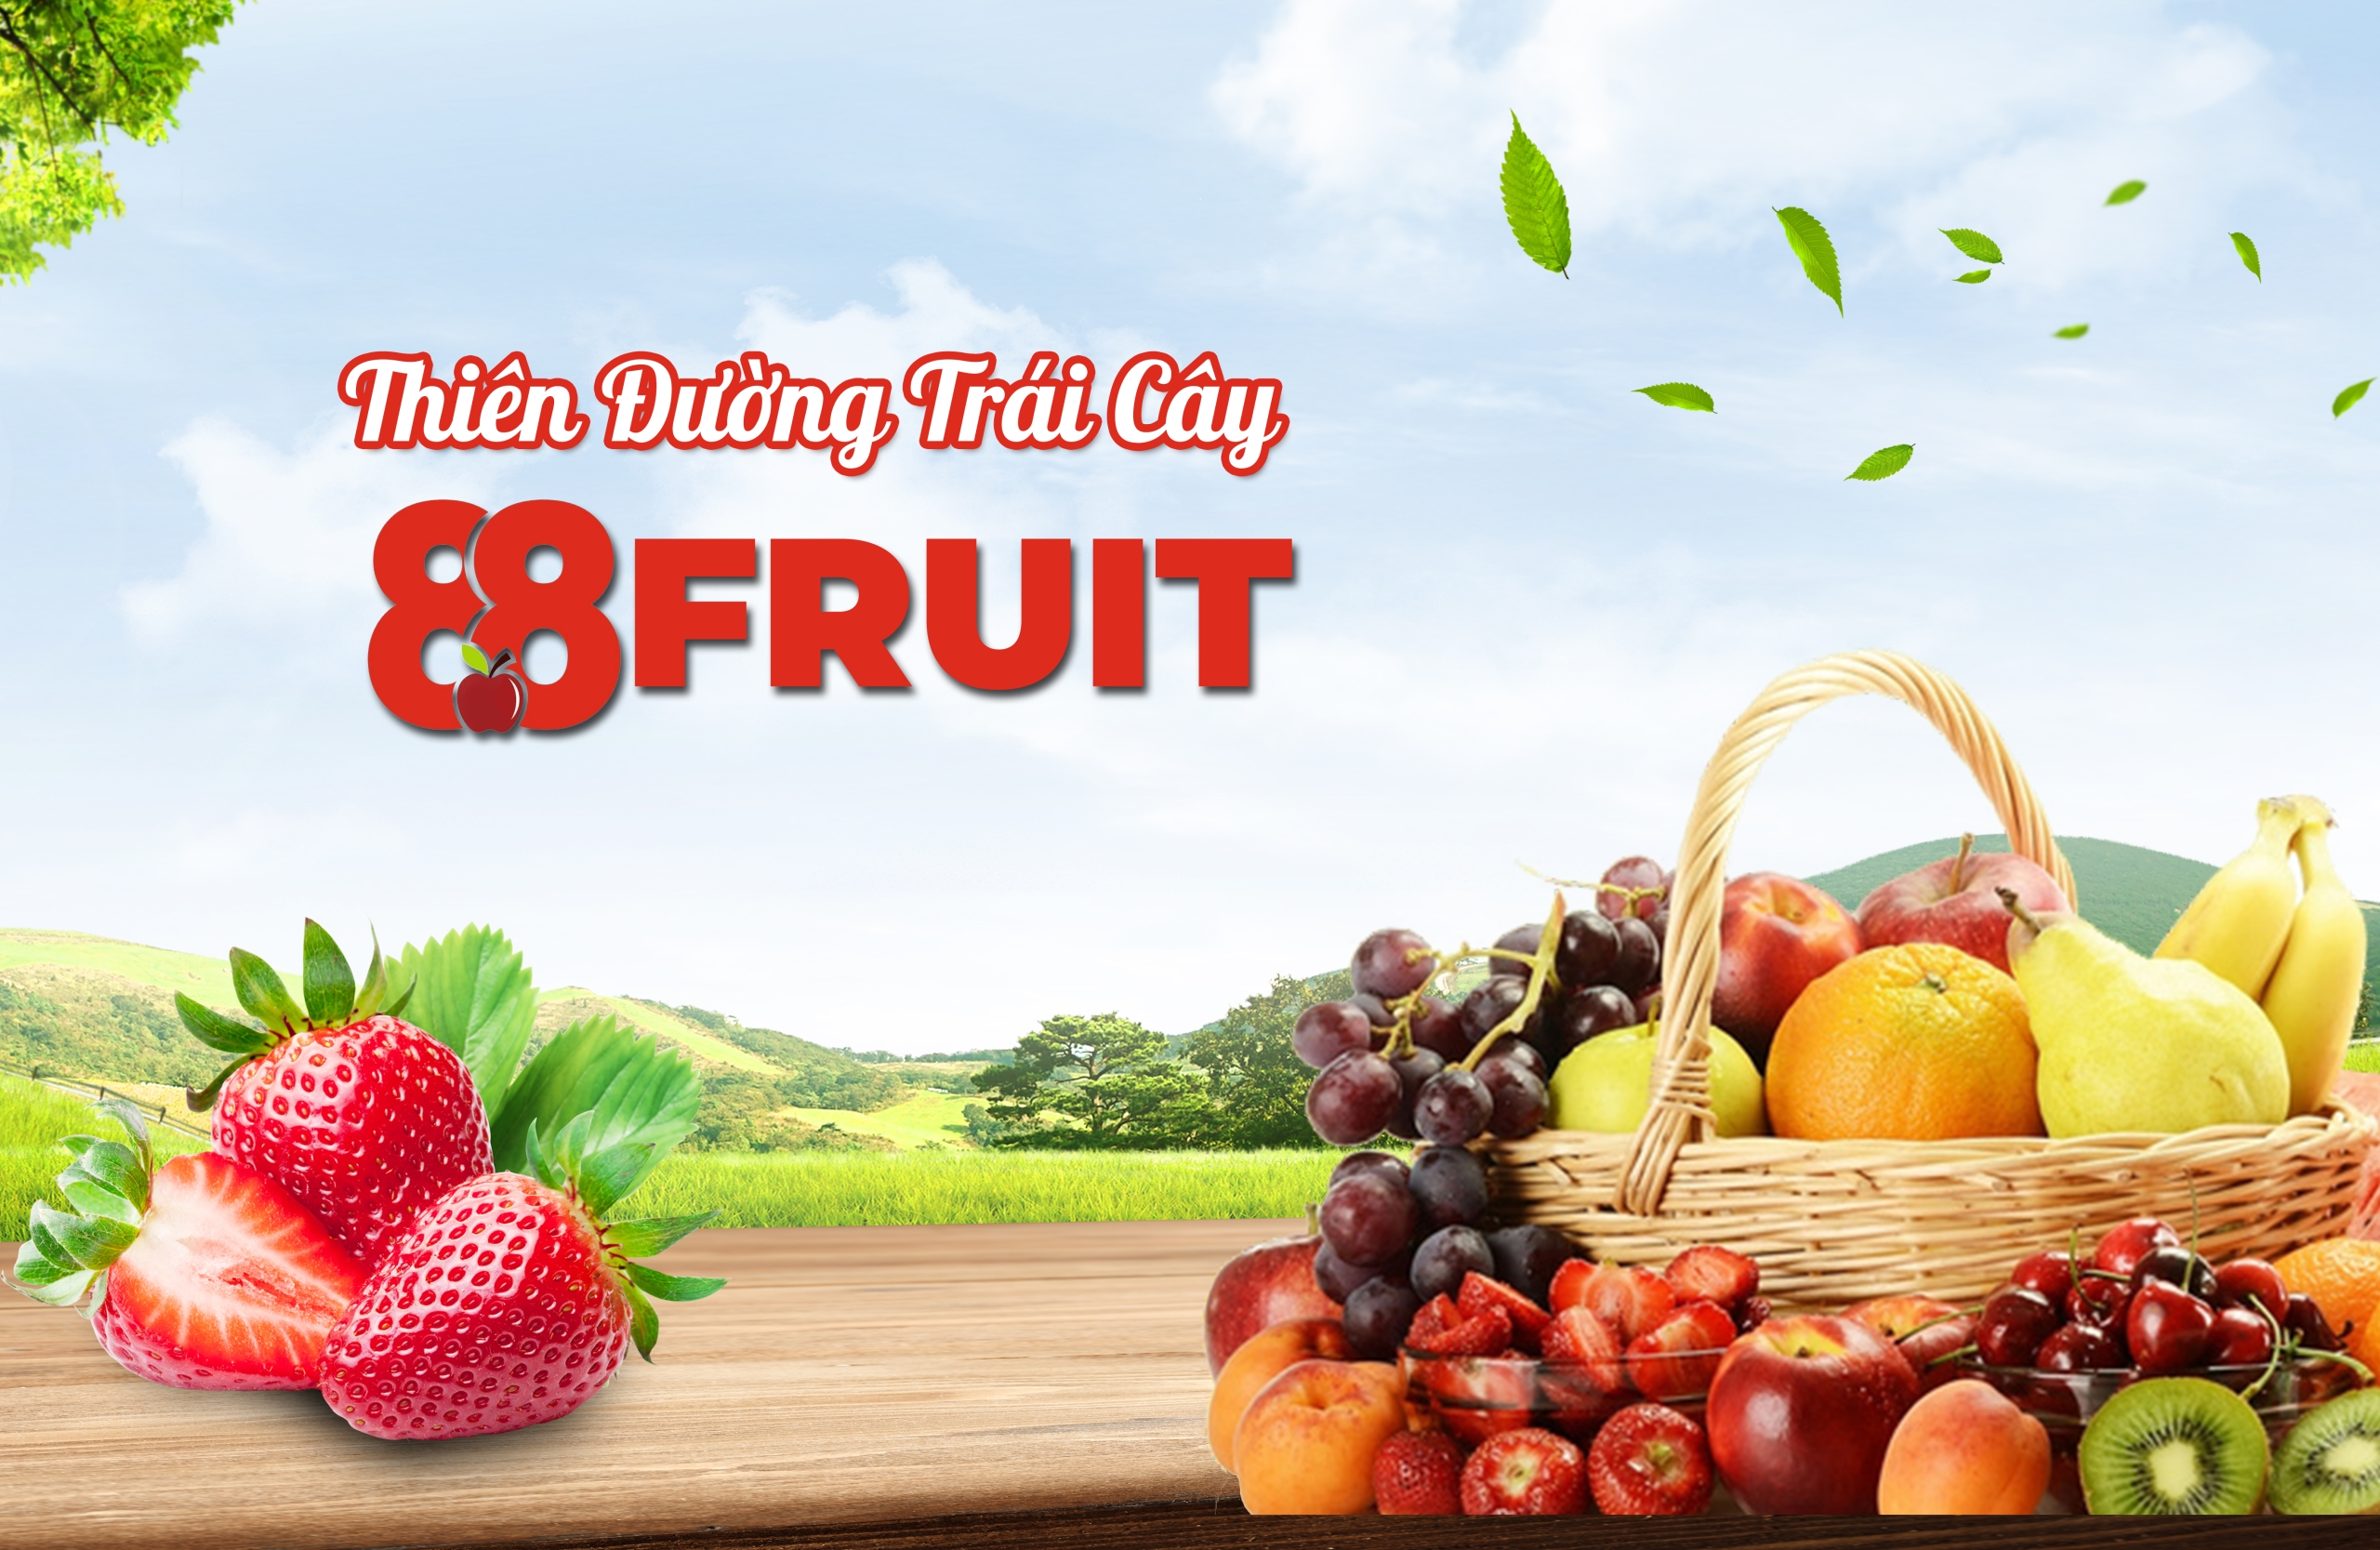 88 FRUIT – THIÊN ĐƯỜNG TRÁI CÂY NGON ĐẮM SAY GIẢI NHIỆT MÙA HÈ